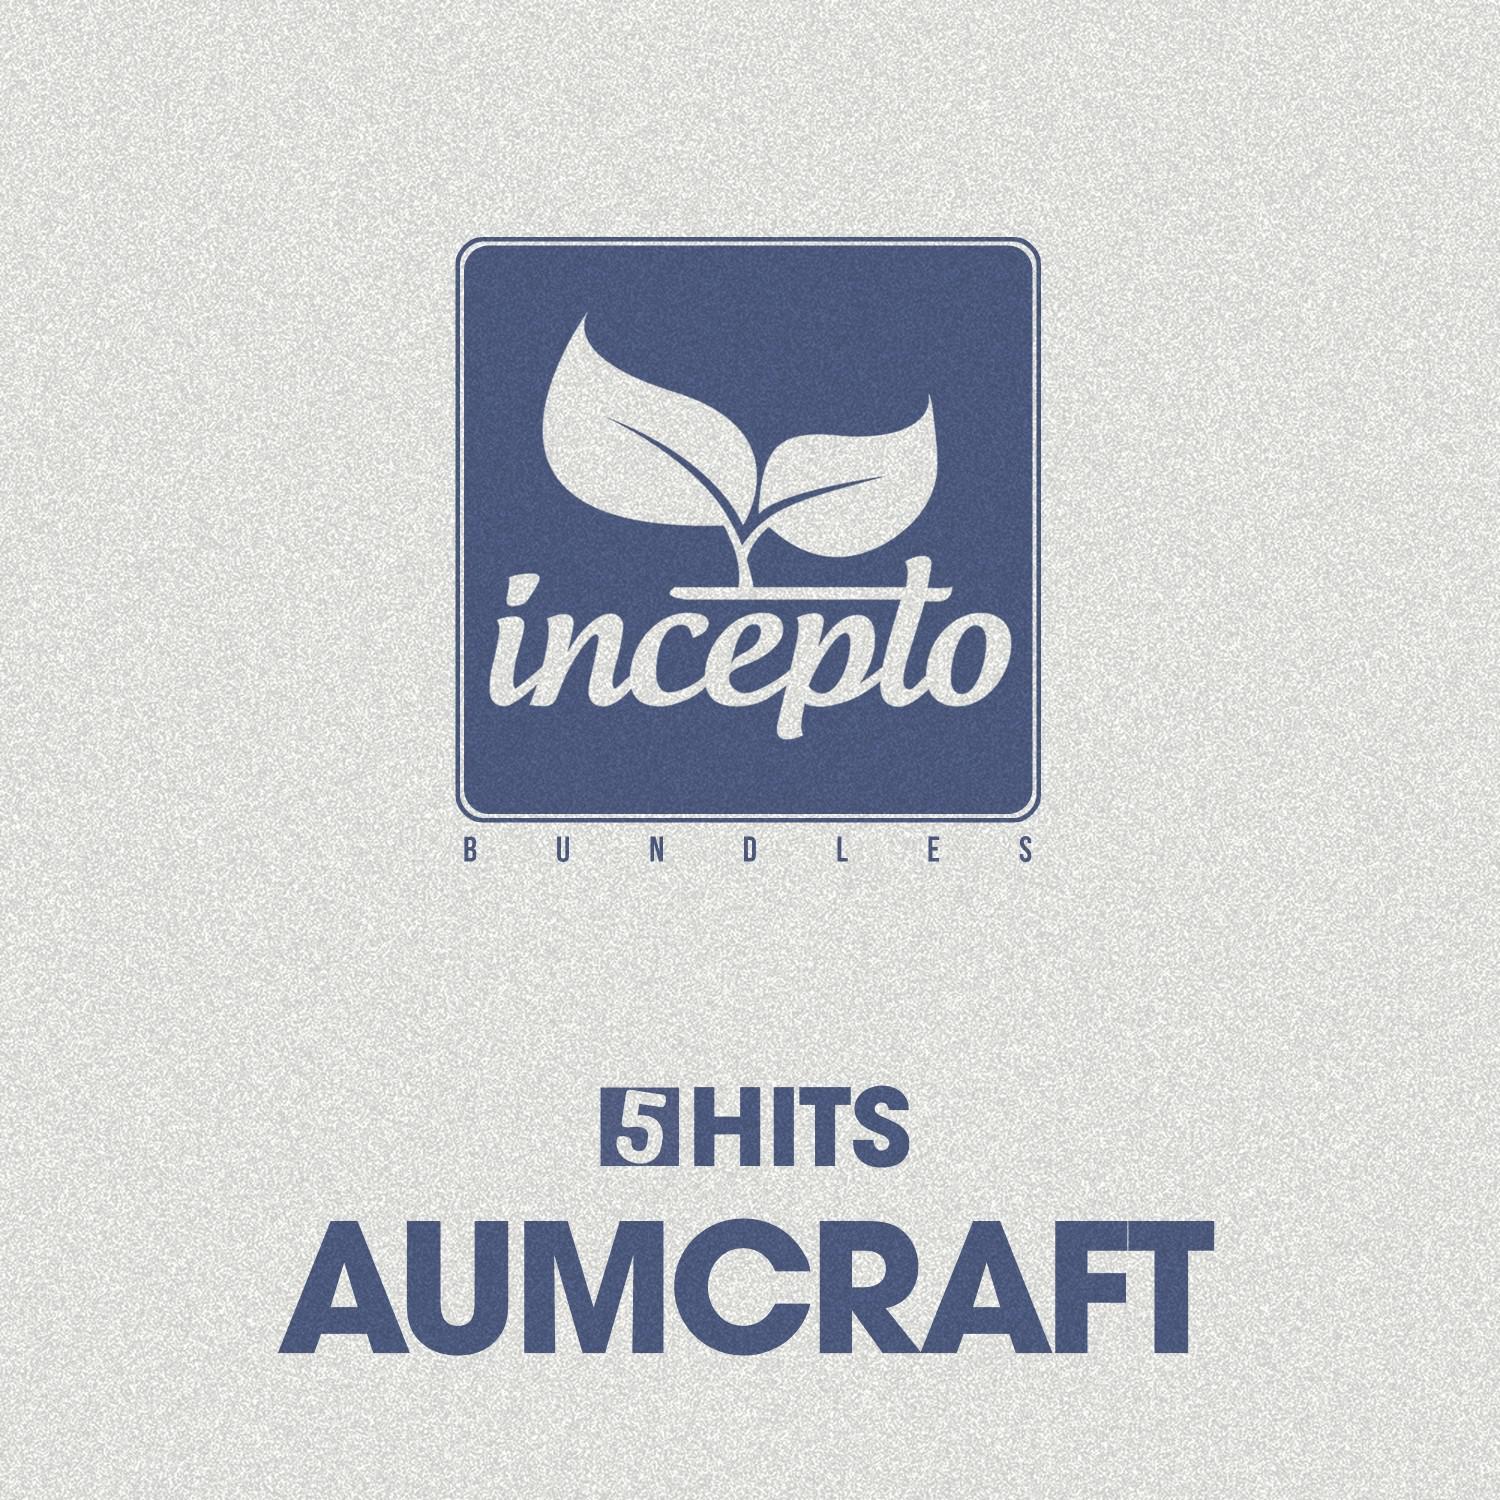 5 Hits: Aumcraft